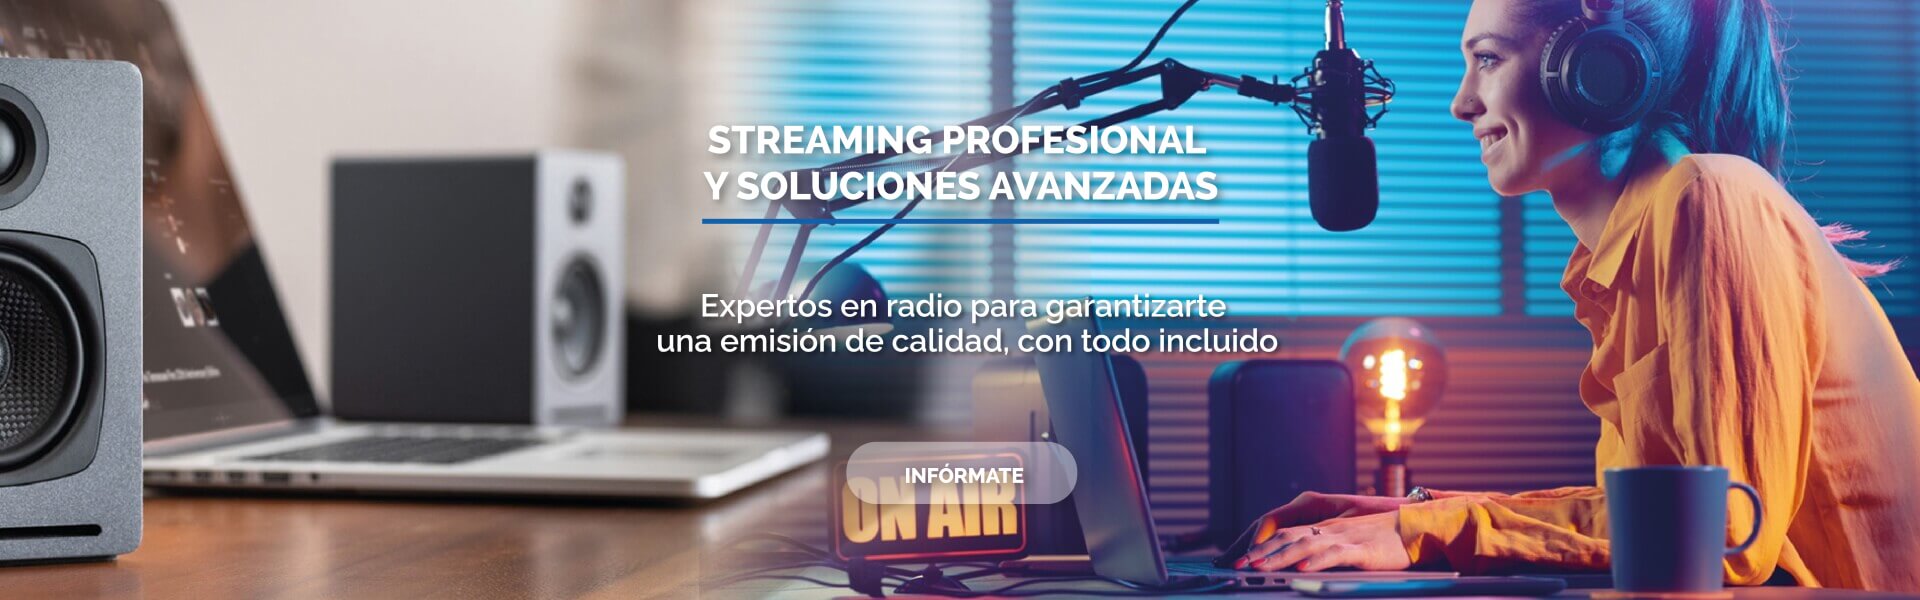 Servicios streaming para emisoras de radio, Shoutcast, Icecast, Centovacast, apps iOS, Android y Alexa